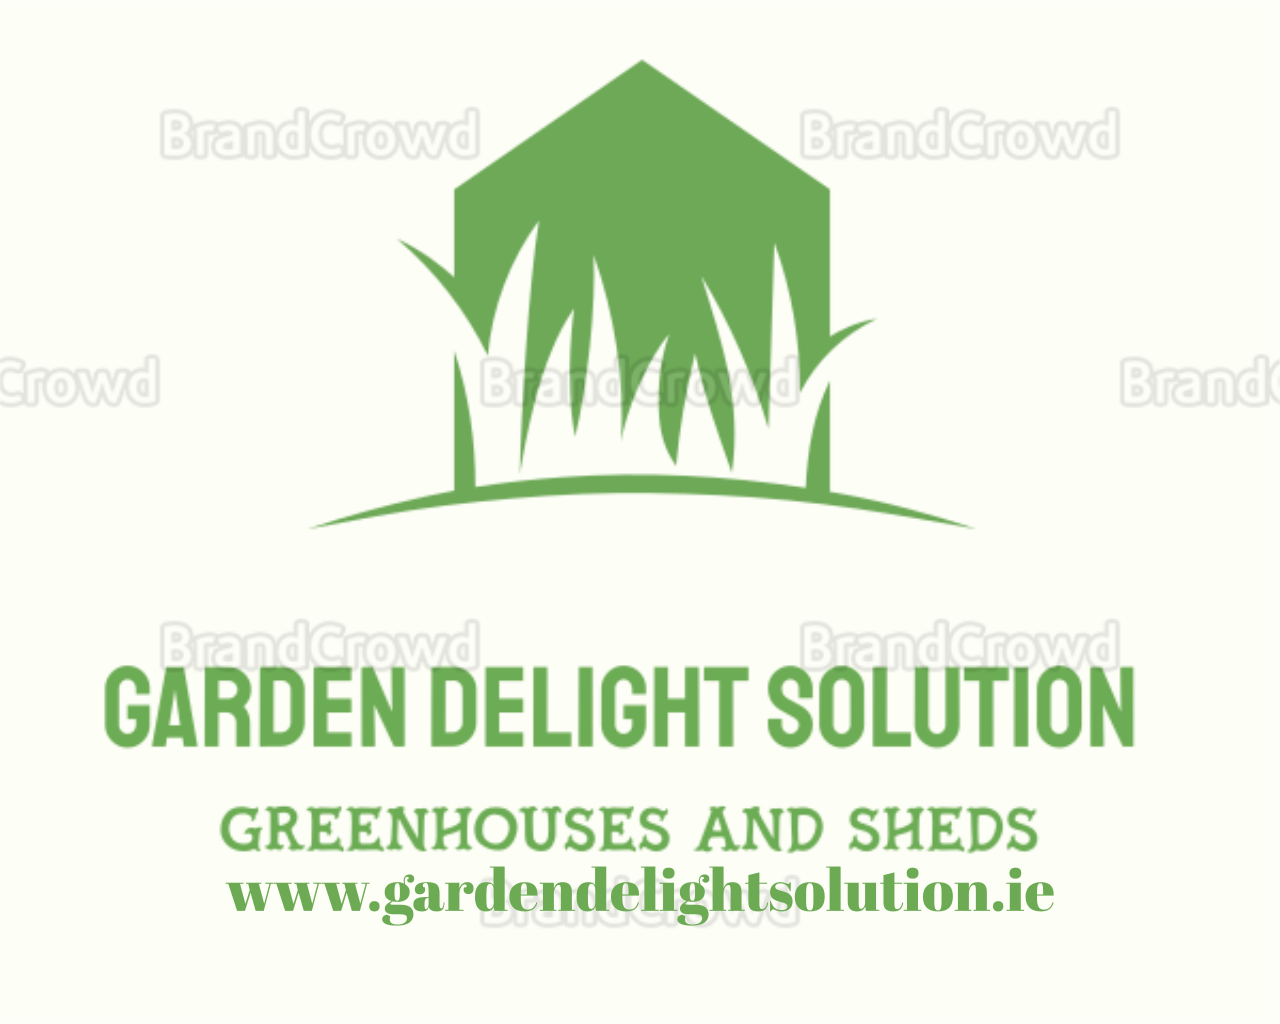 www.gardendelightsolution.ie's logo